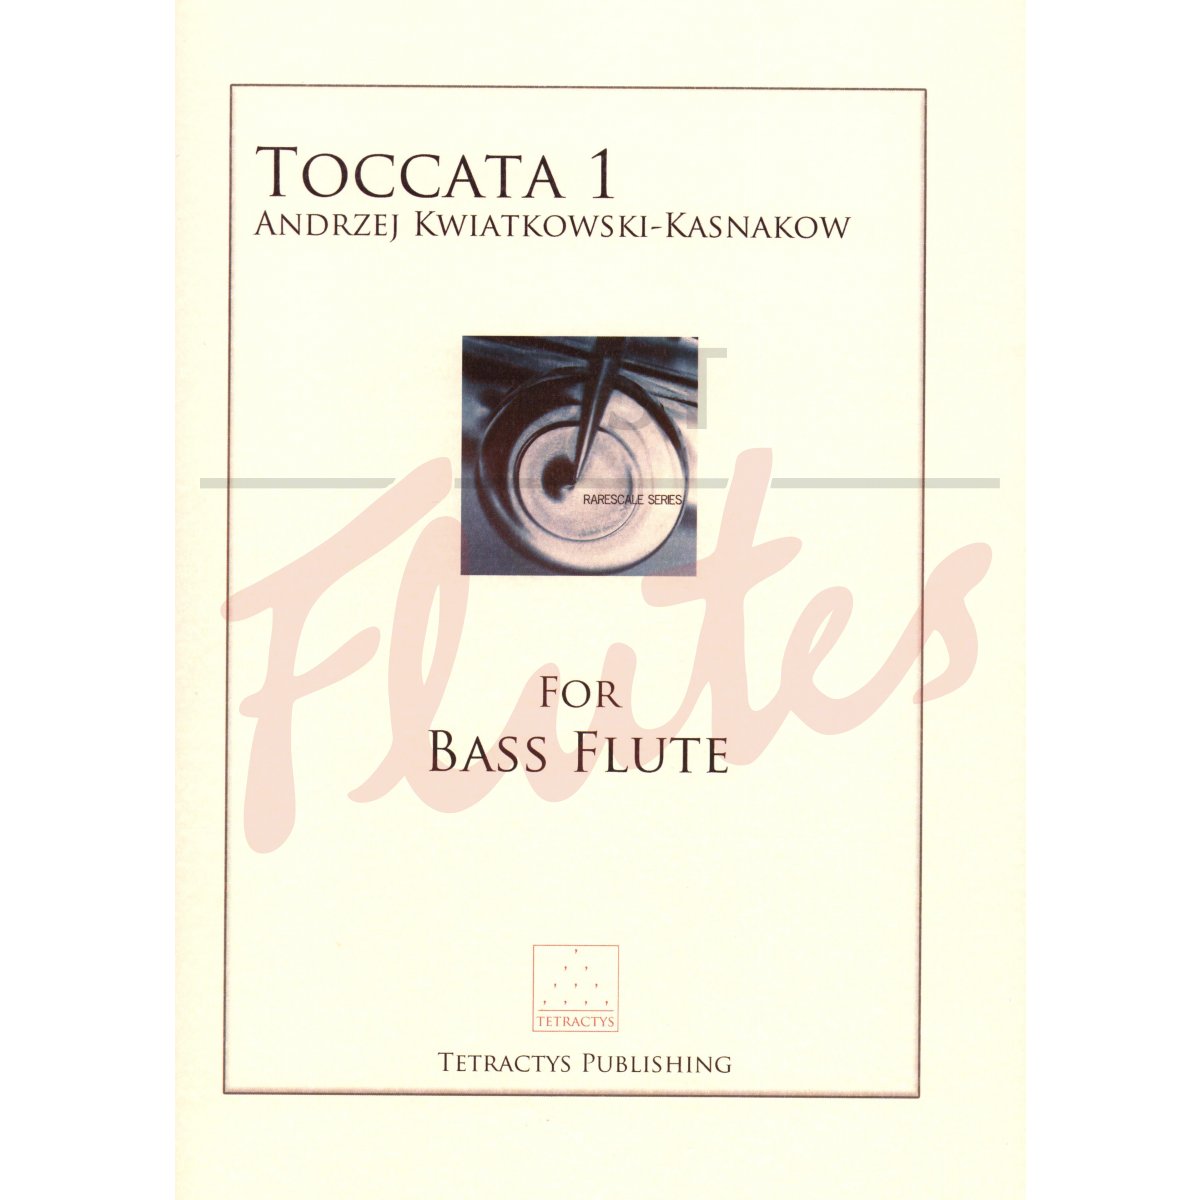 Toccata 1 for Solo Bass Flute